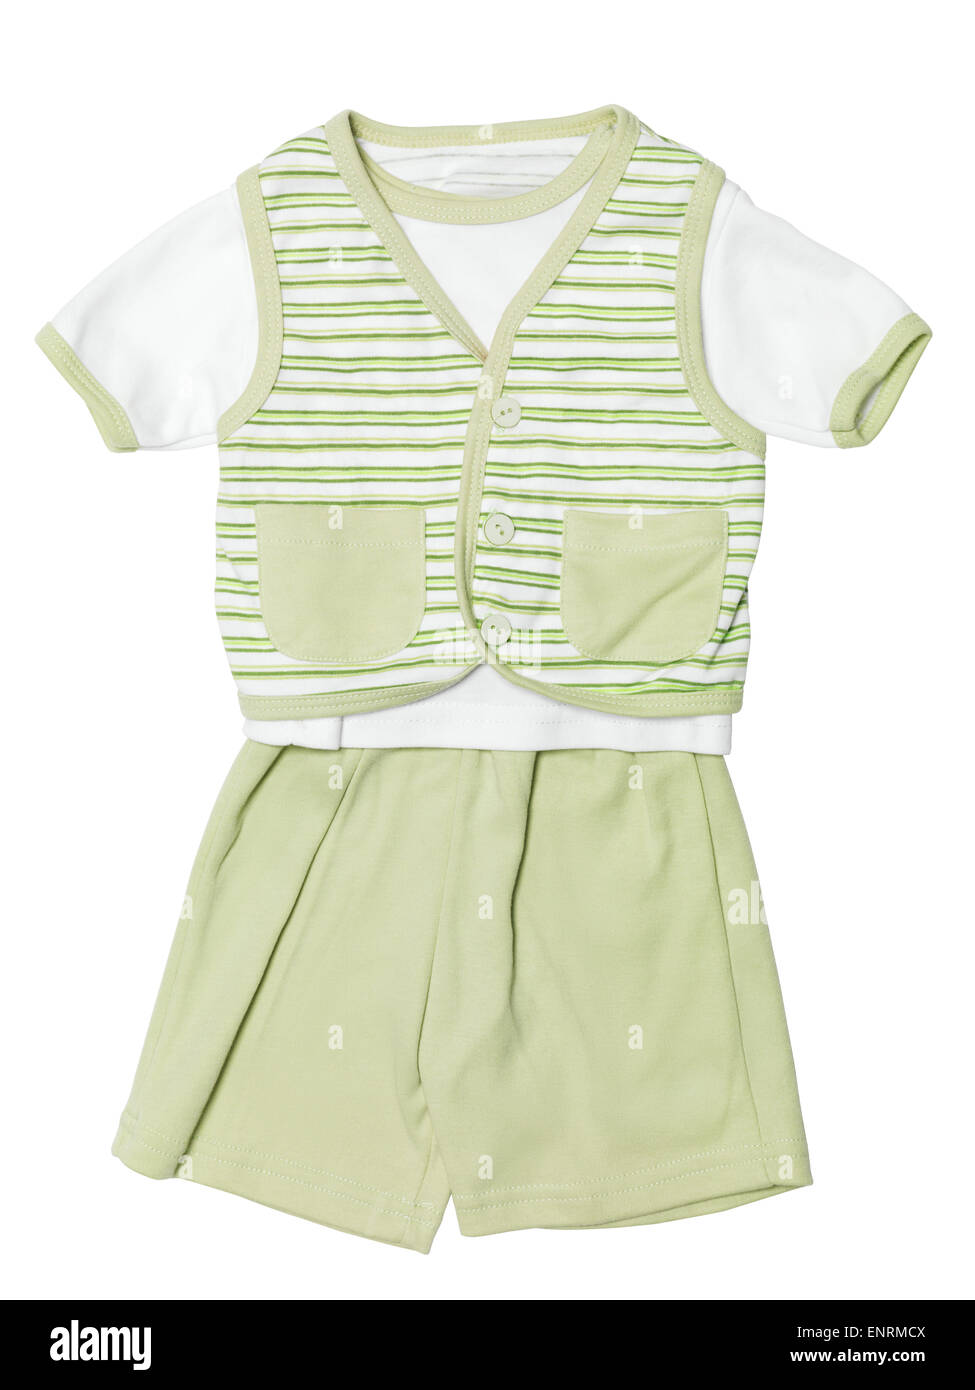 Los bebés varones verde traje a rayas, camisa, chaleco y pantalones cortos, ropa conjunto aislado sobre fondo blanco con trazado de recorte Foto de stock